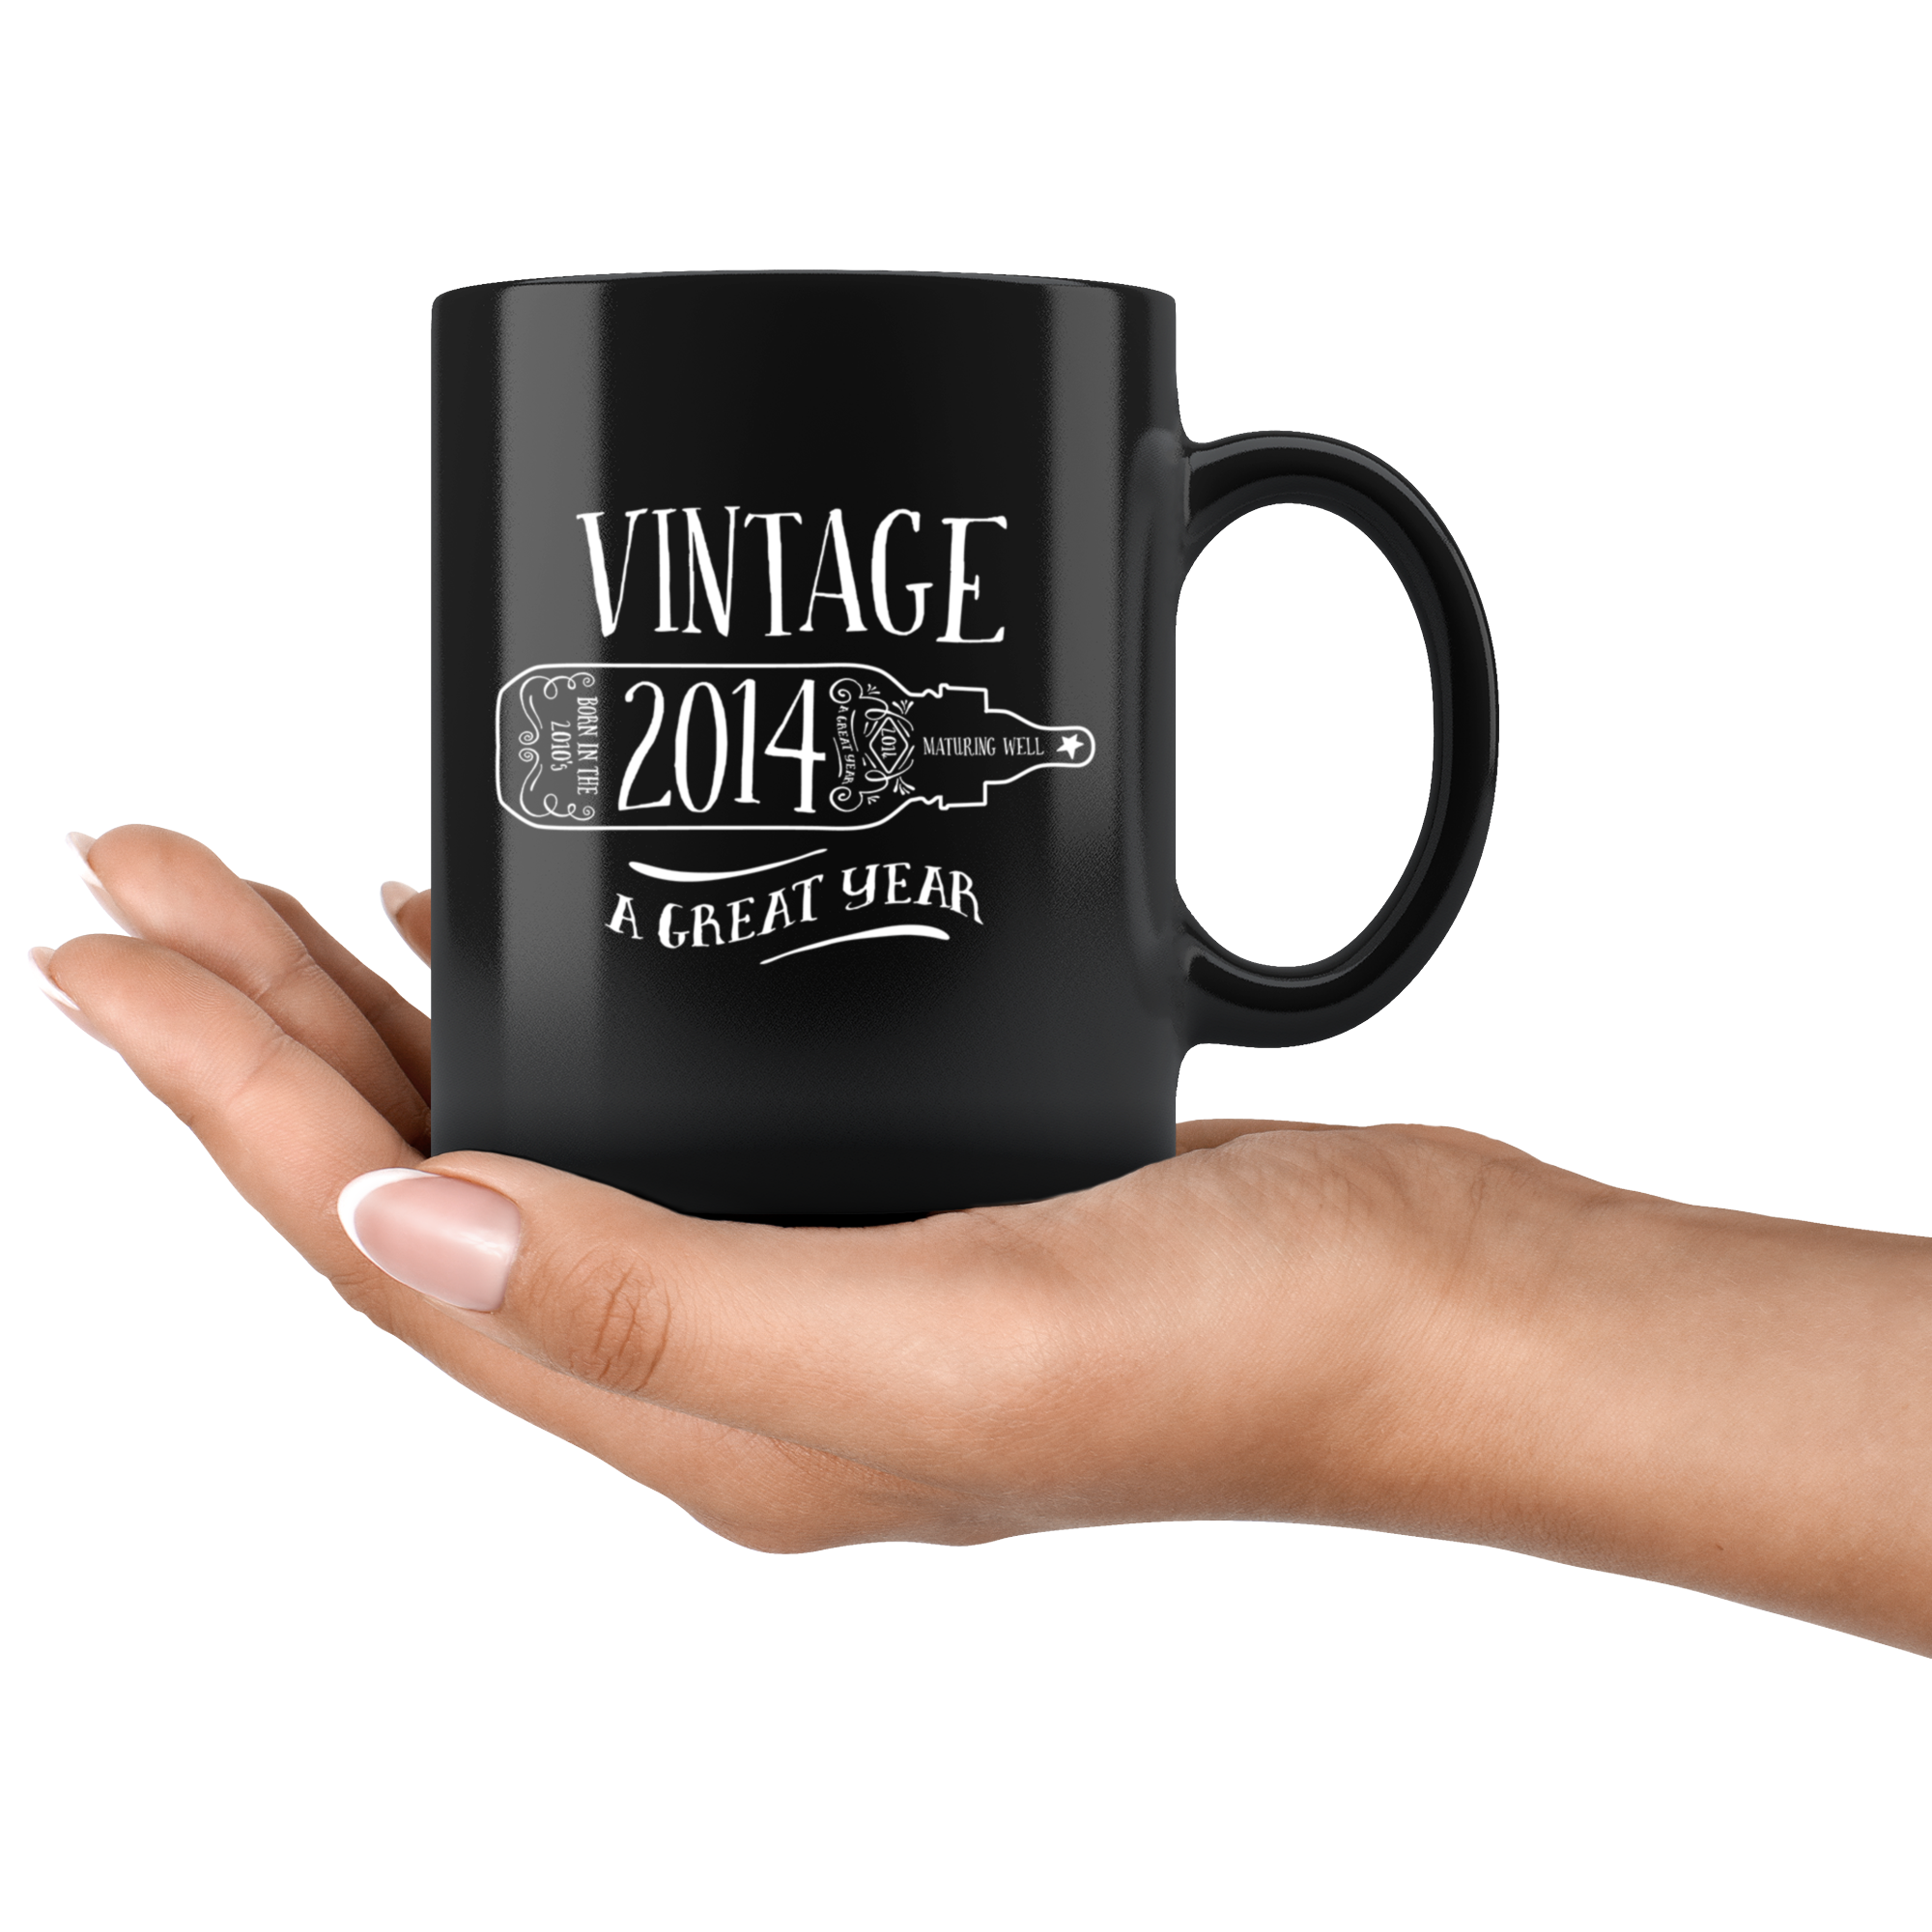 Vintage 2014 - Black Mug